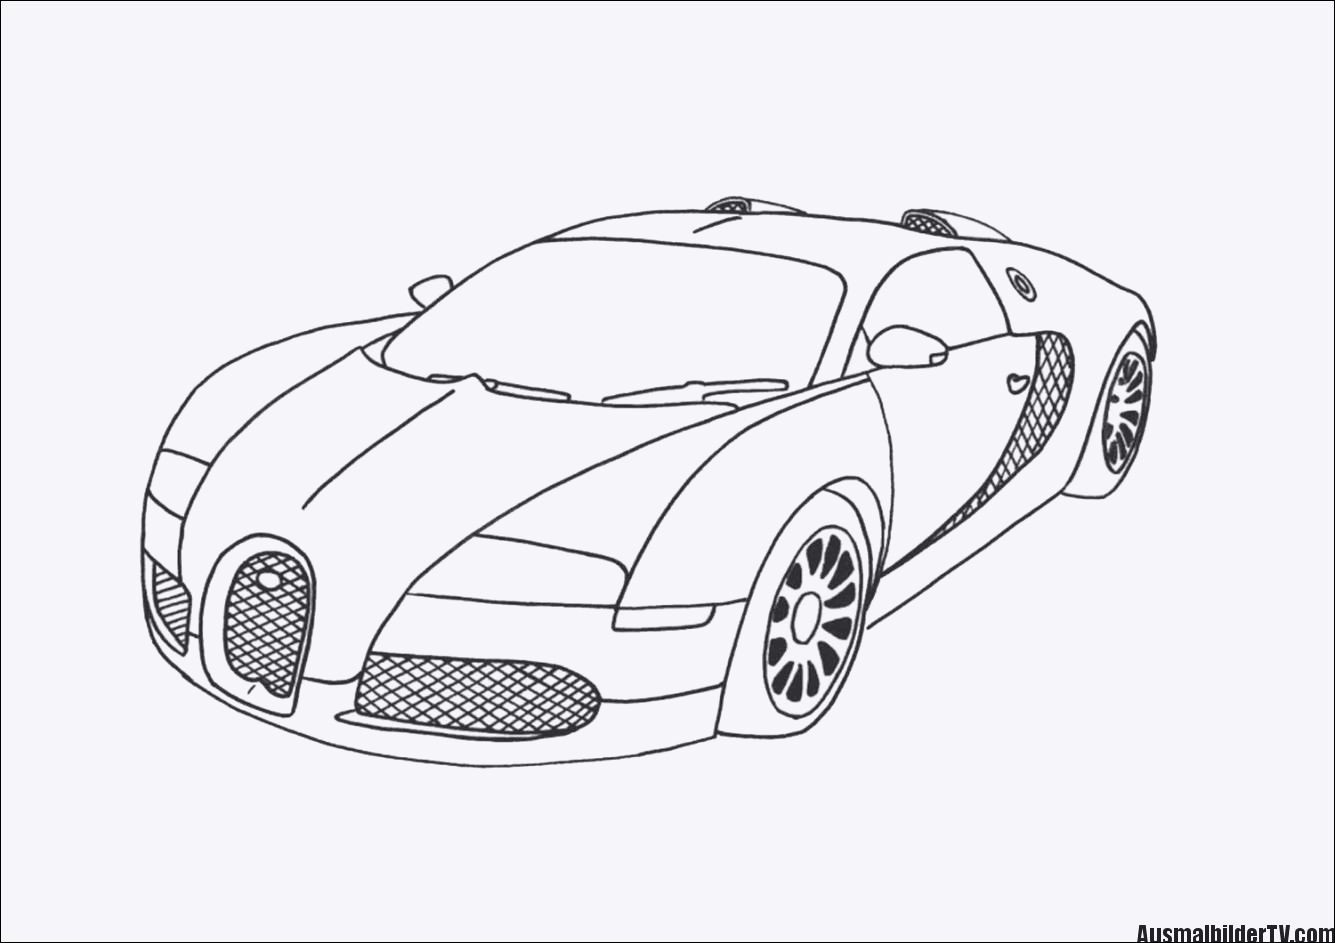 Ausmalbilder Bugatti
 Ausmalbilder Kostenlos Bugatti